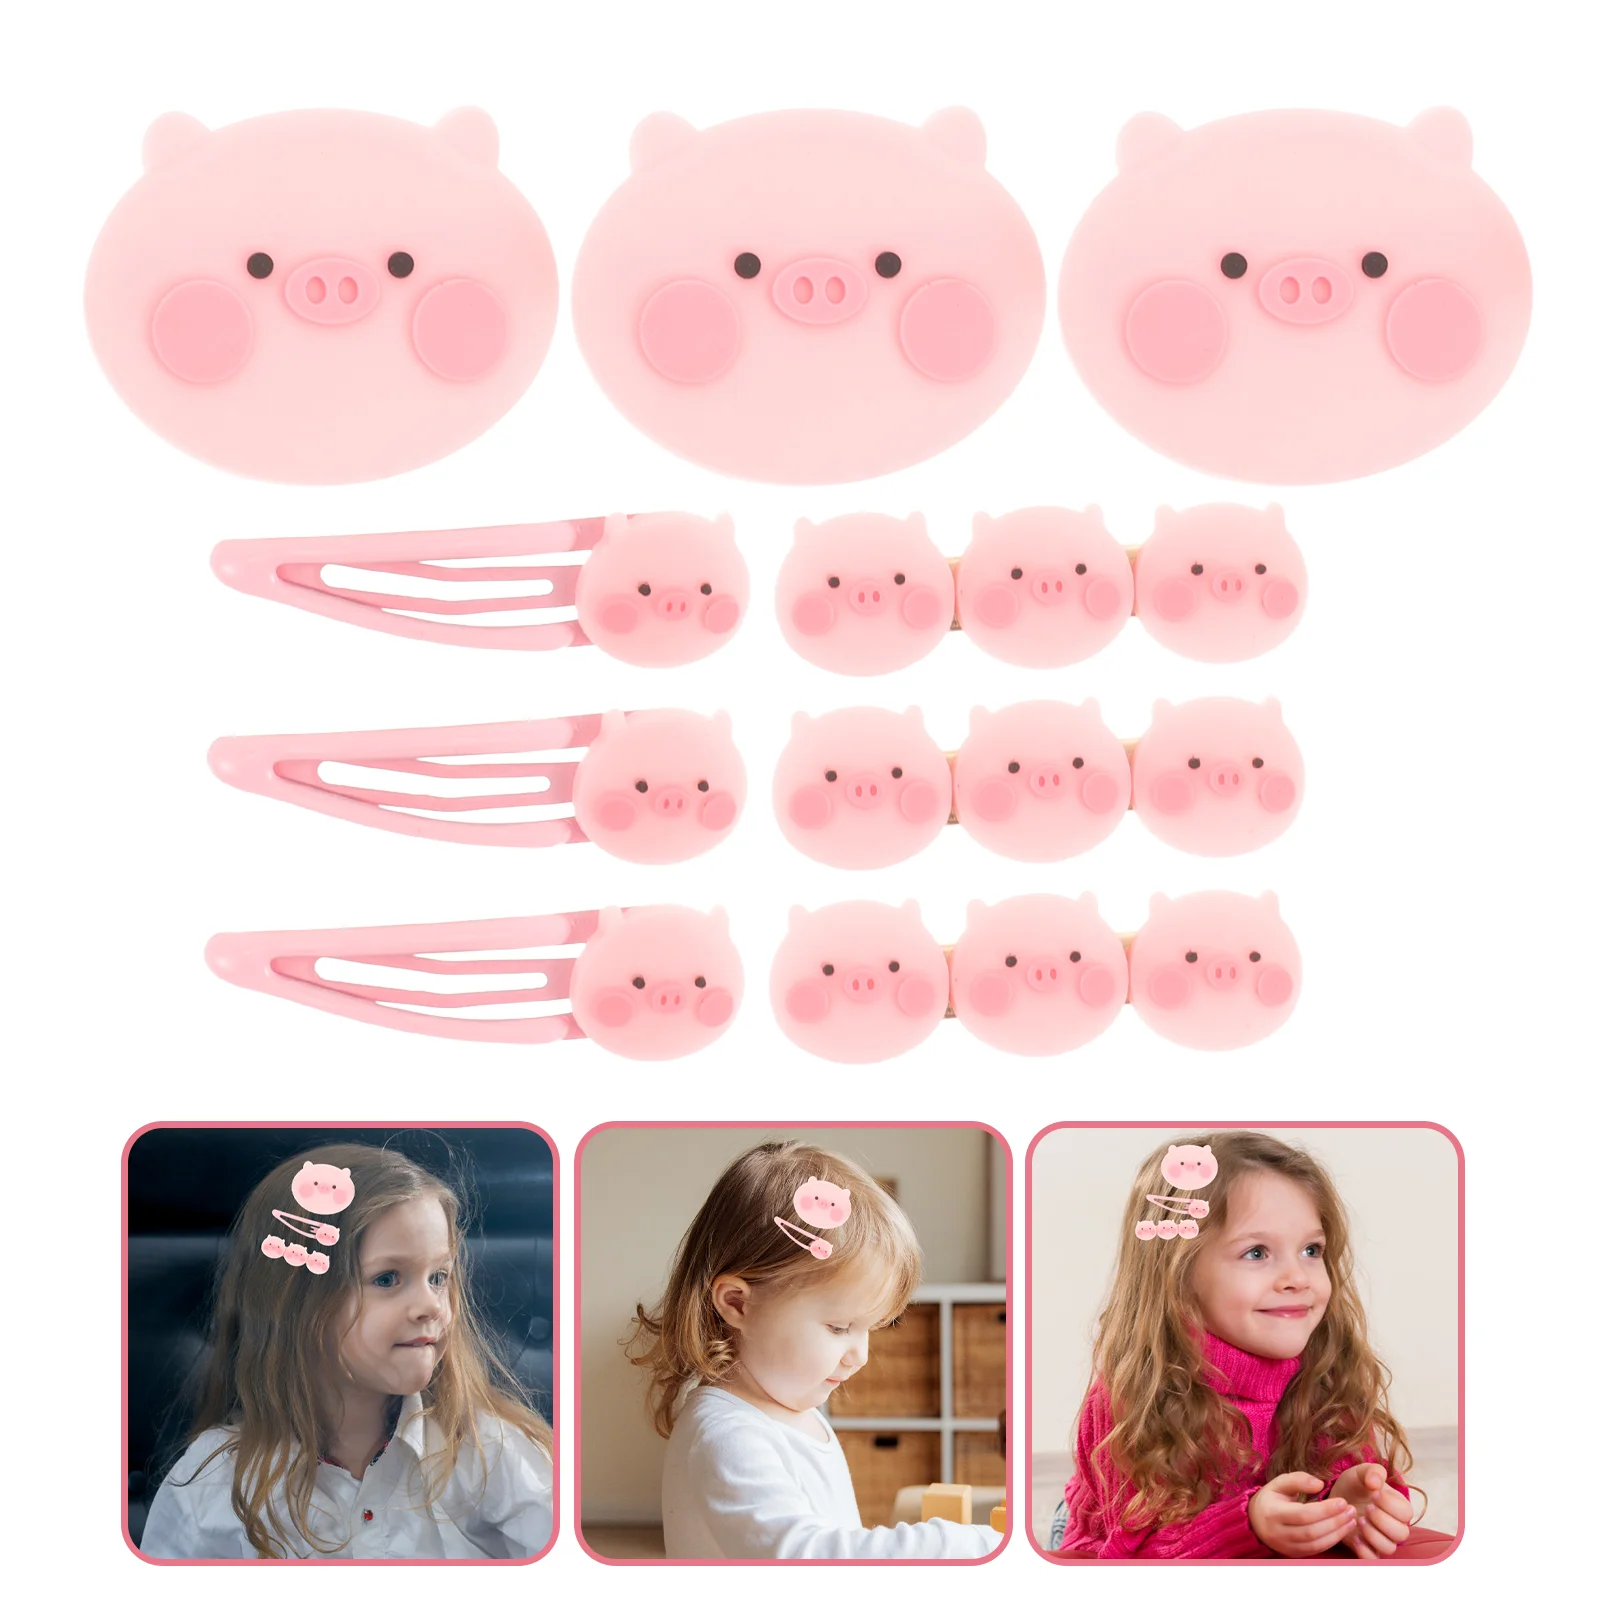 

9 Pcs Hairpin Kids Clips for Girls Cartoon Pig Resin Headgear Decor Zinc Alloy Child